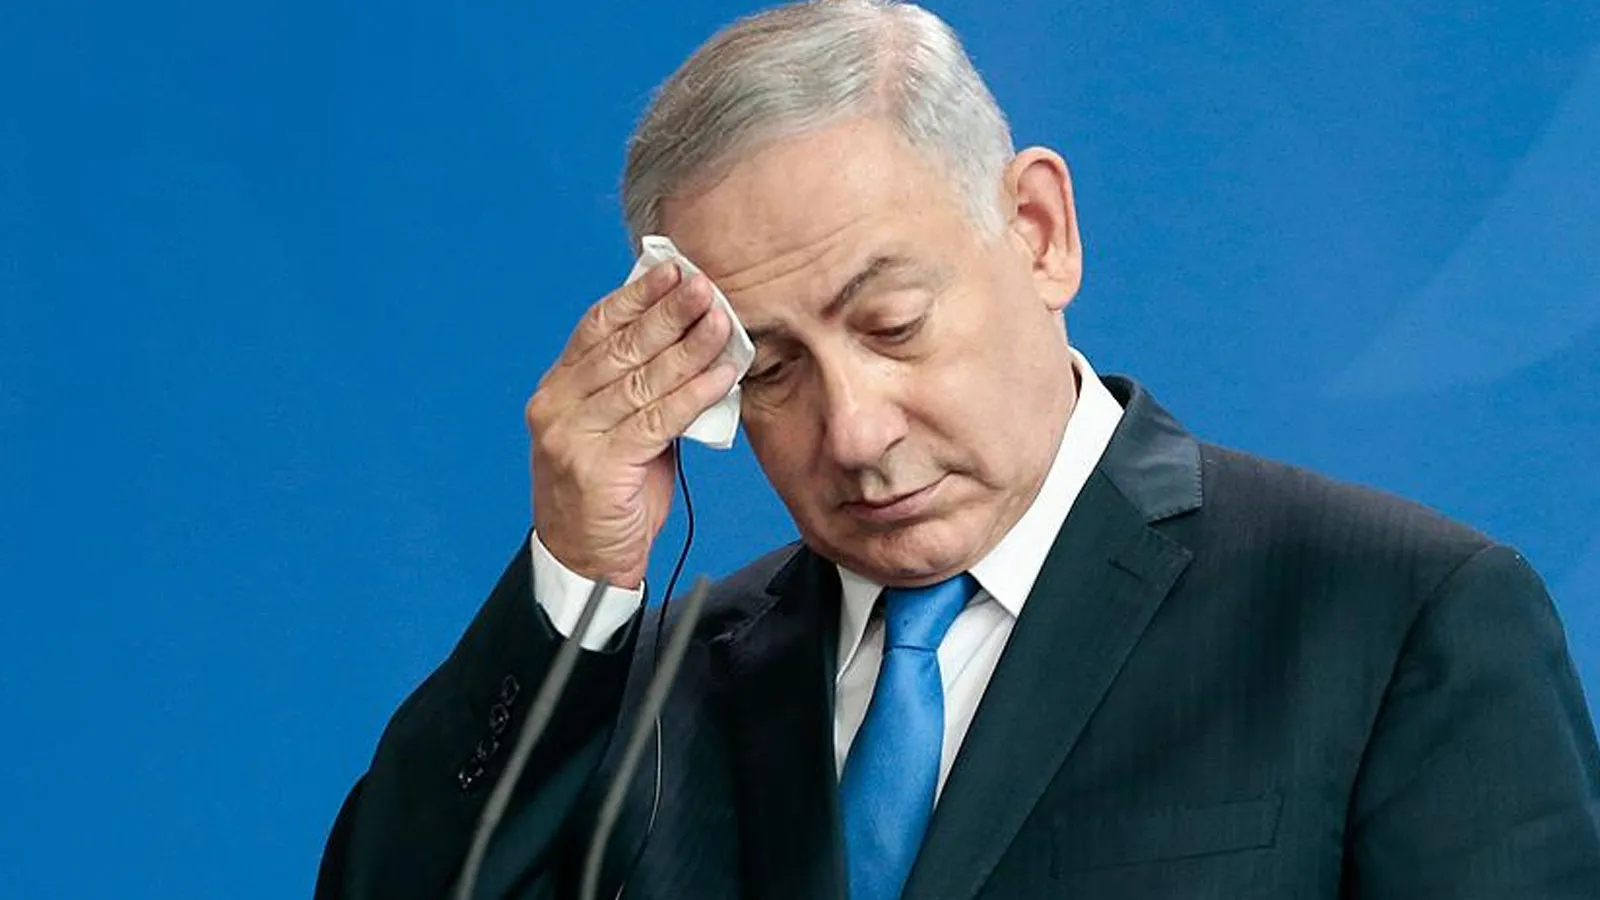 Uluslararası Adalet Divanının (UAD) kararları sonrası Netanyahu'nun gelecekte tutuklanmasının önünün açıldığı ifade ediliyor.